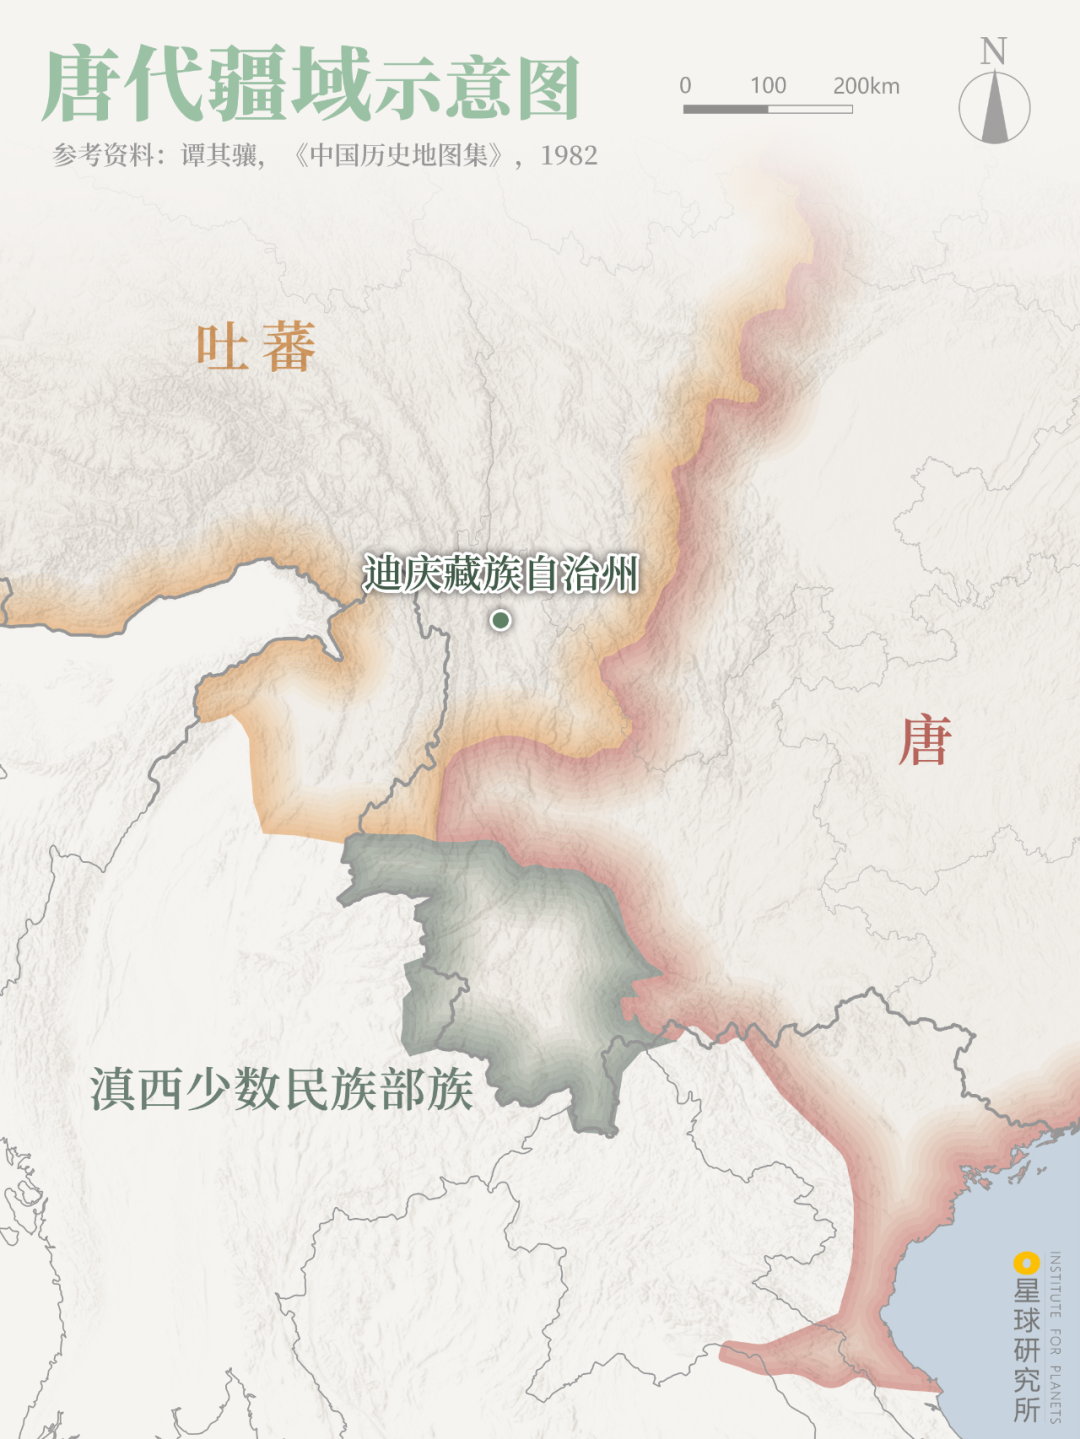 卡瓦格博峰成为宁玛派神山从此迪庆藏区便开启了自己的封神之路到了